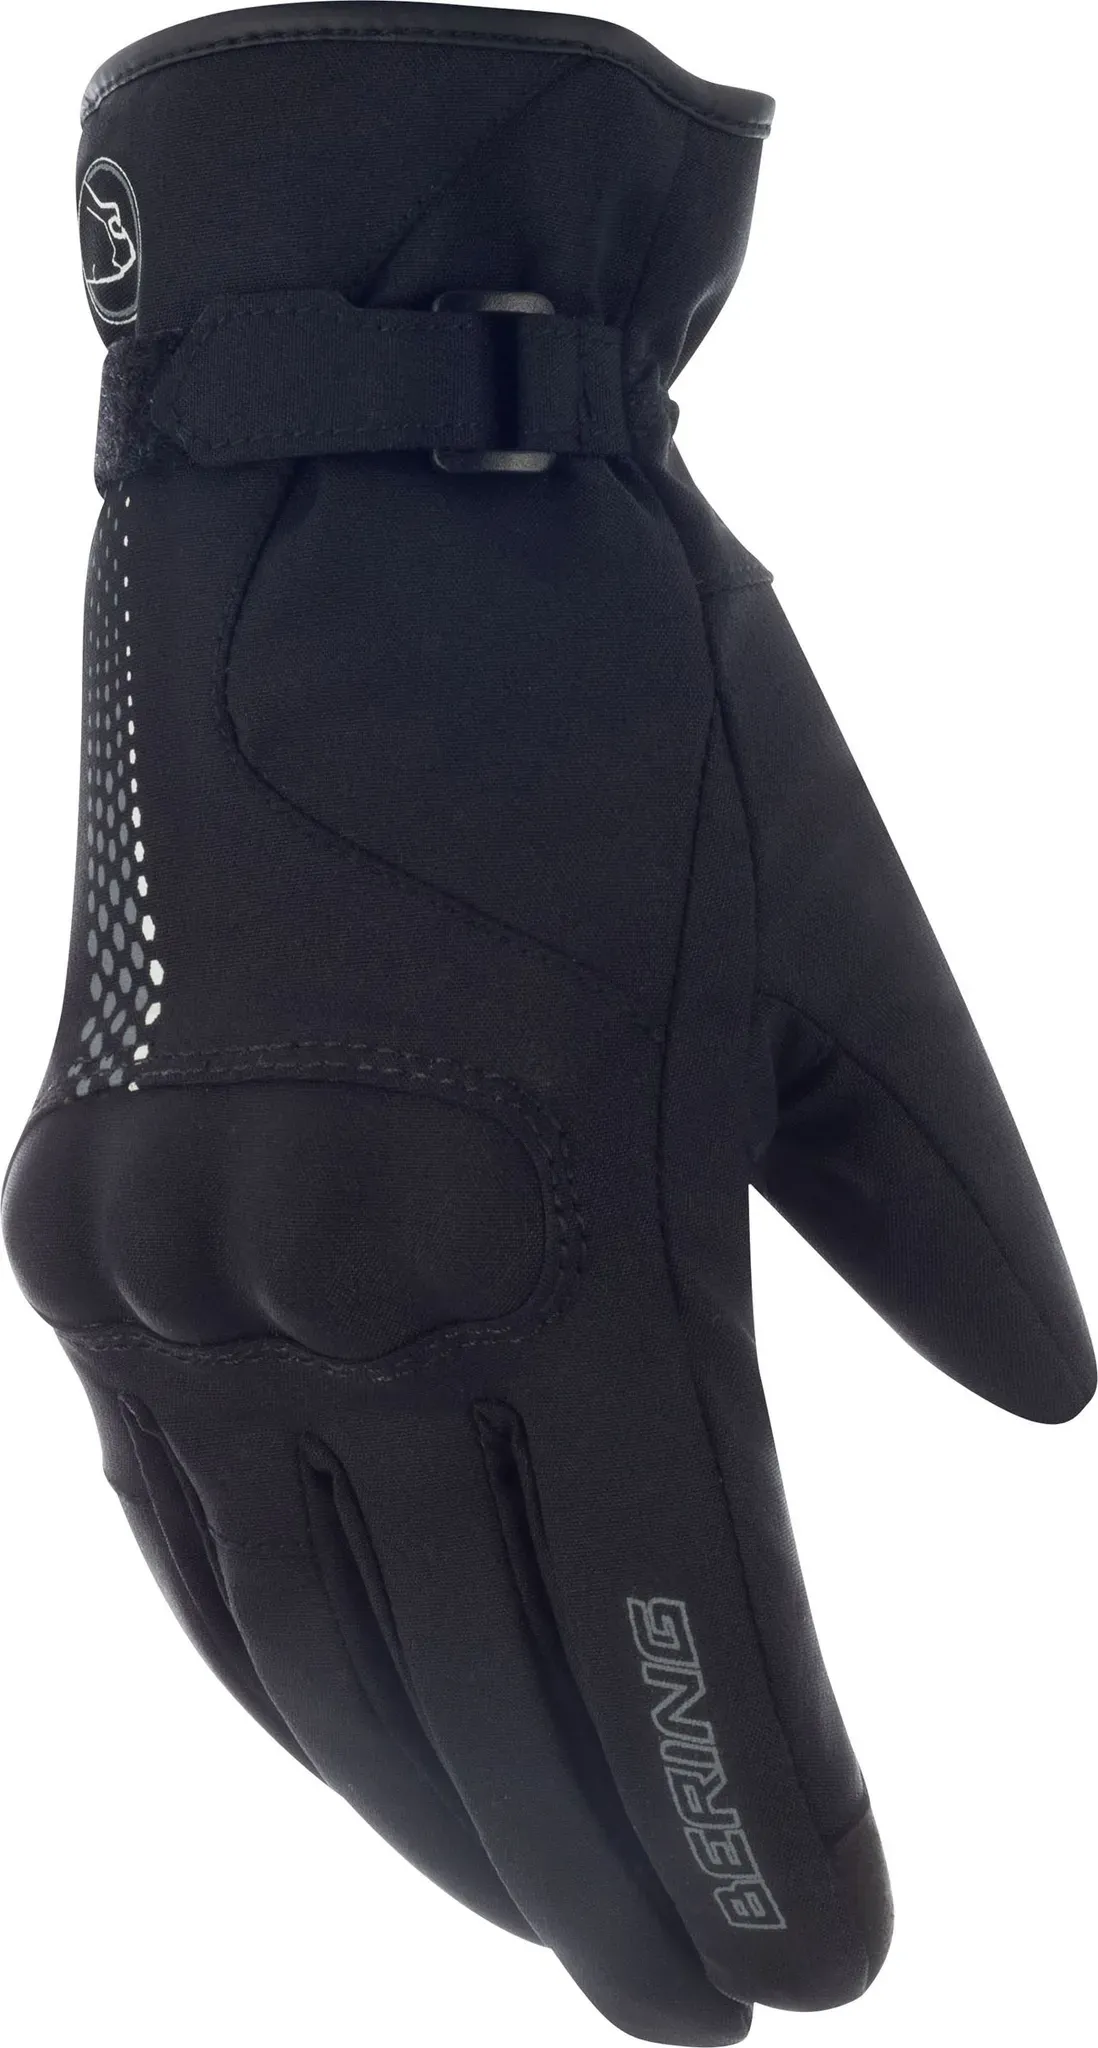 Bering Carmen, gants imperméables pour femmes - Noir/Gris - 6